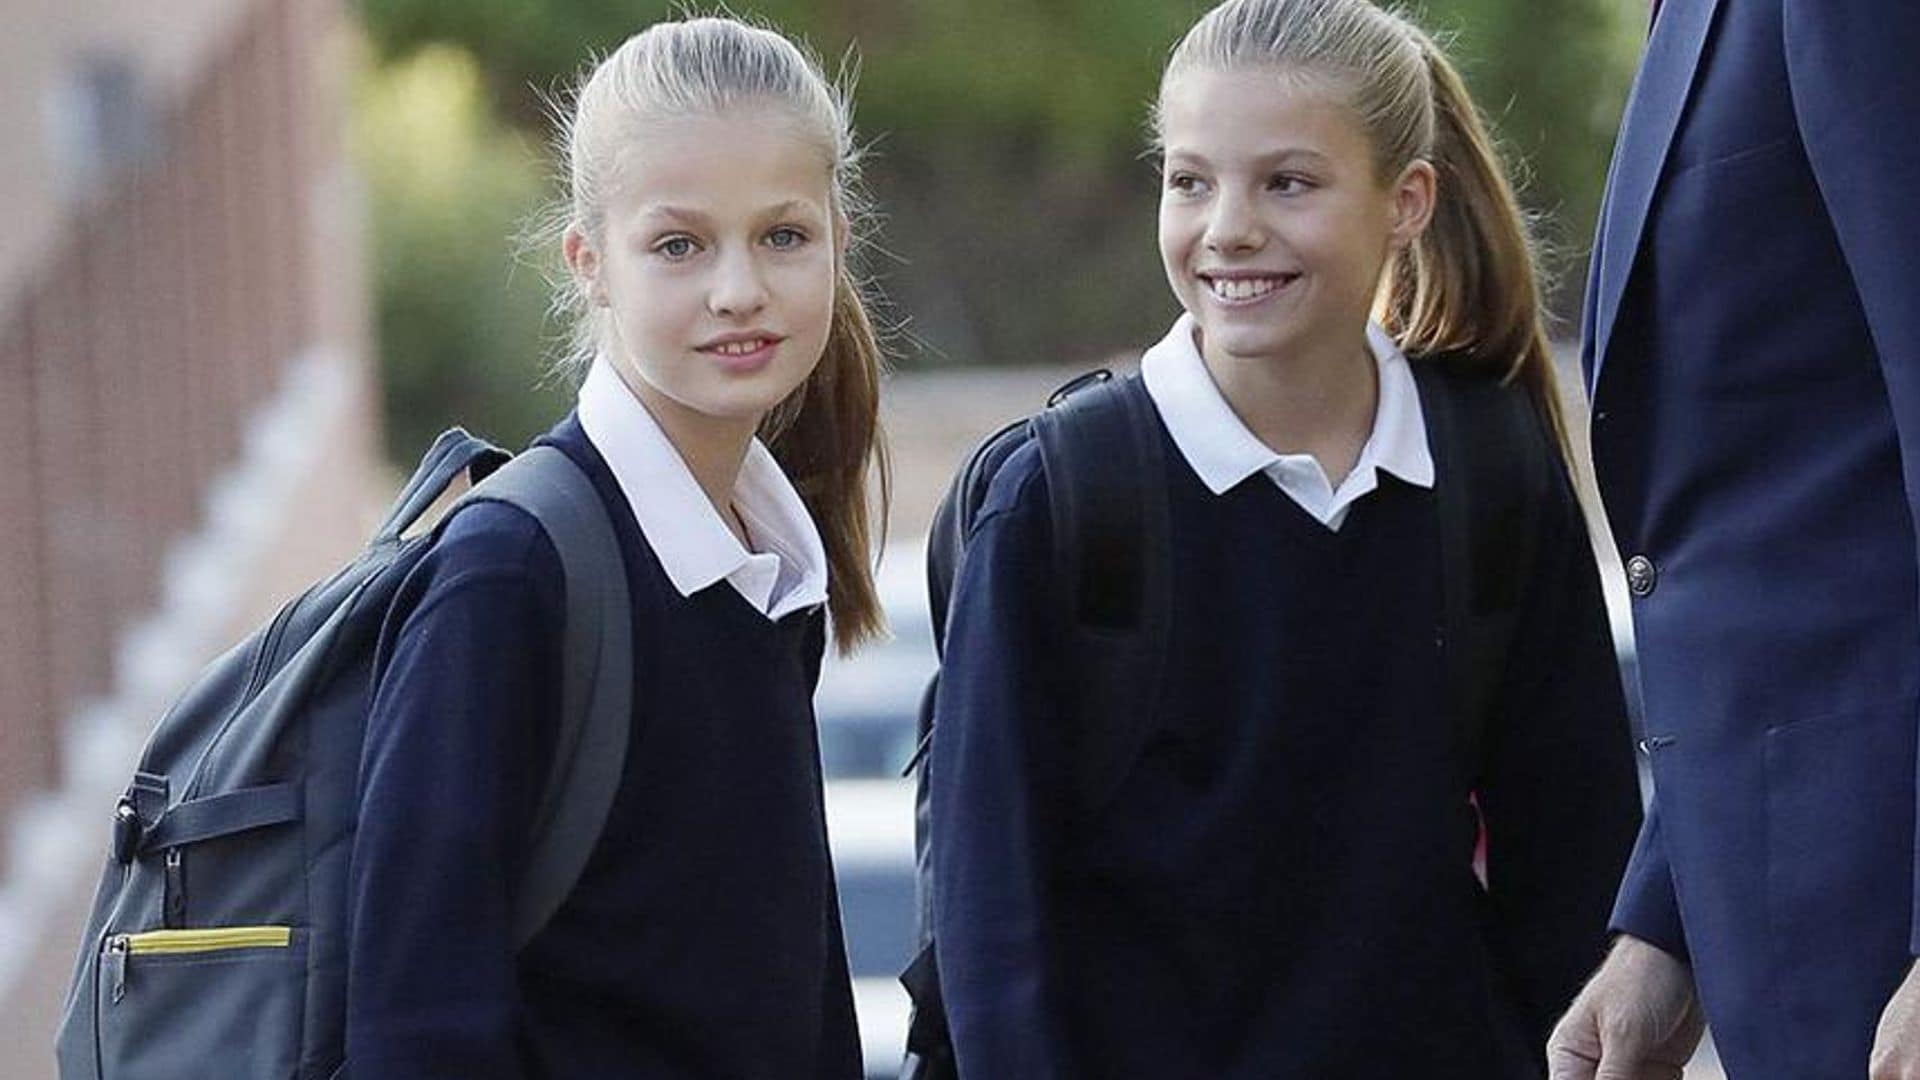 Lo que las mochilas escolares de las princesas Leonor y Sofía revelan sobre su personalidad